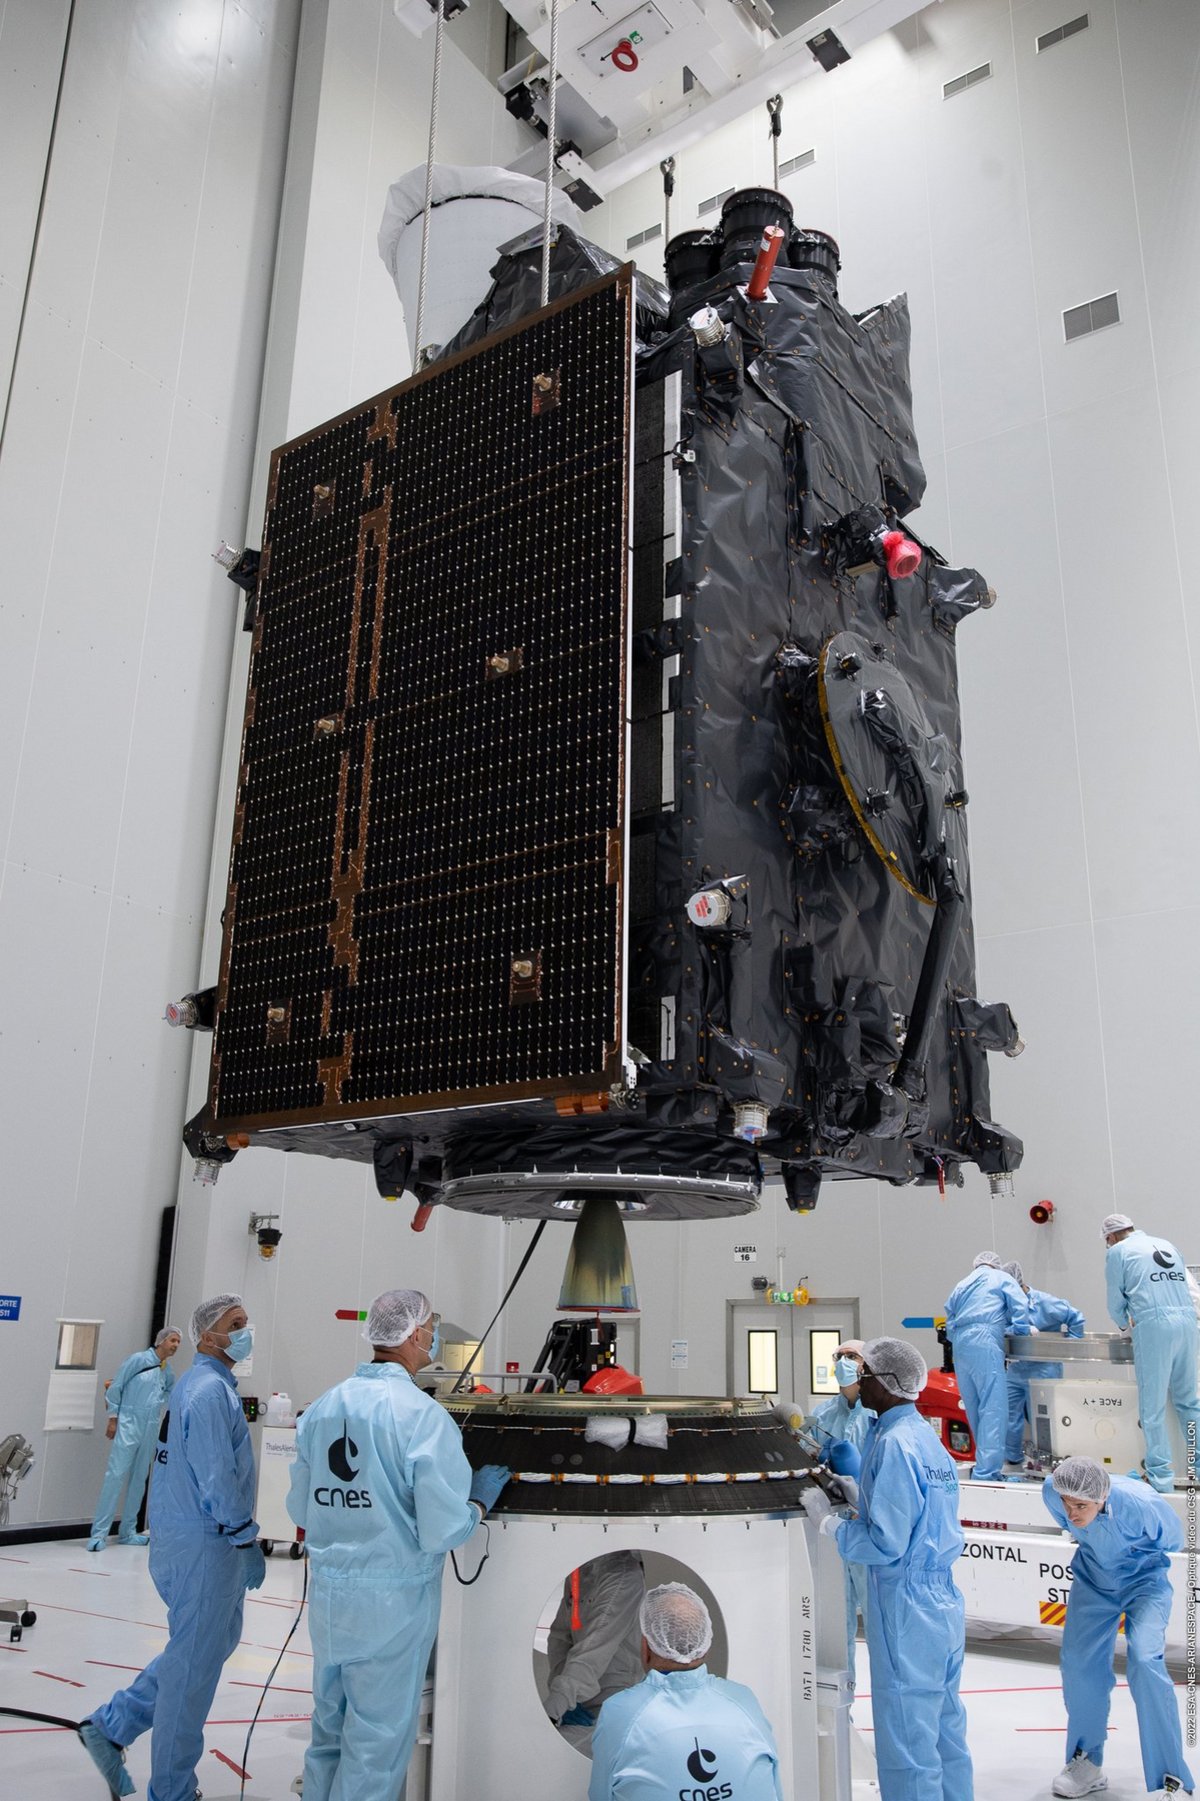 MTG-I1 sera le dernier des trois satellites éjectés ce soir. Crédits : ESA/CNES/Arianespace/CSG/JM. Guillon